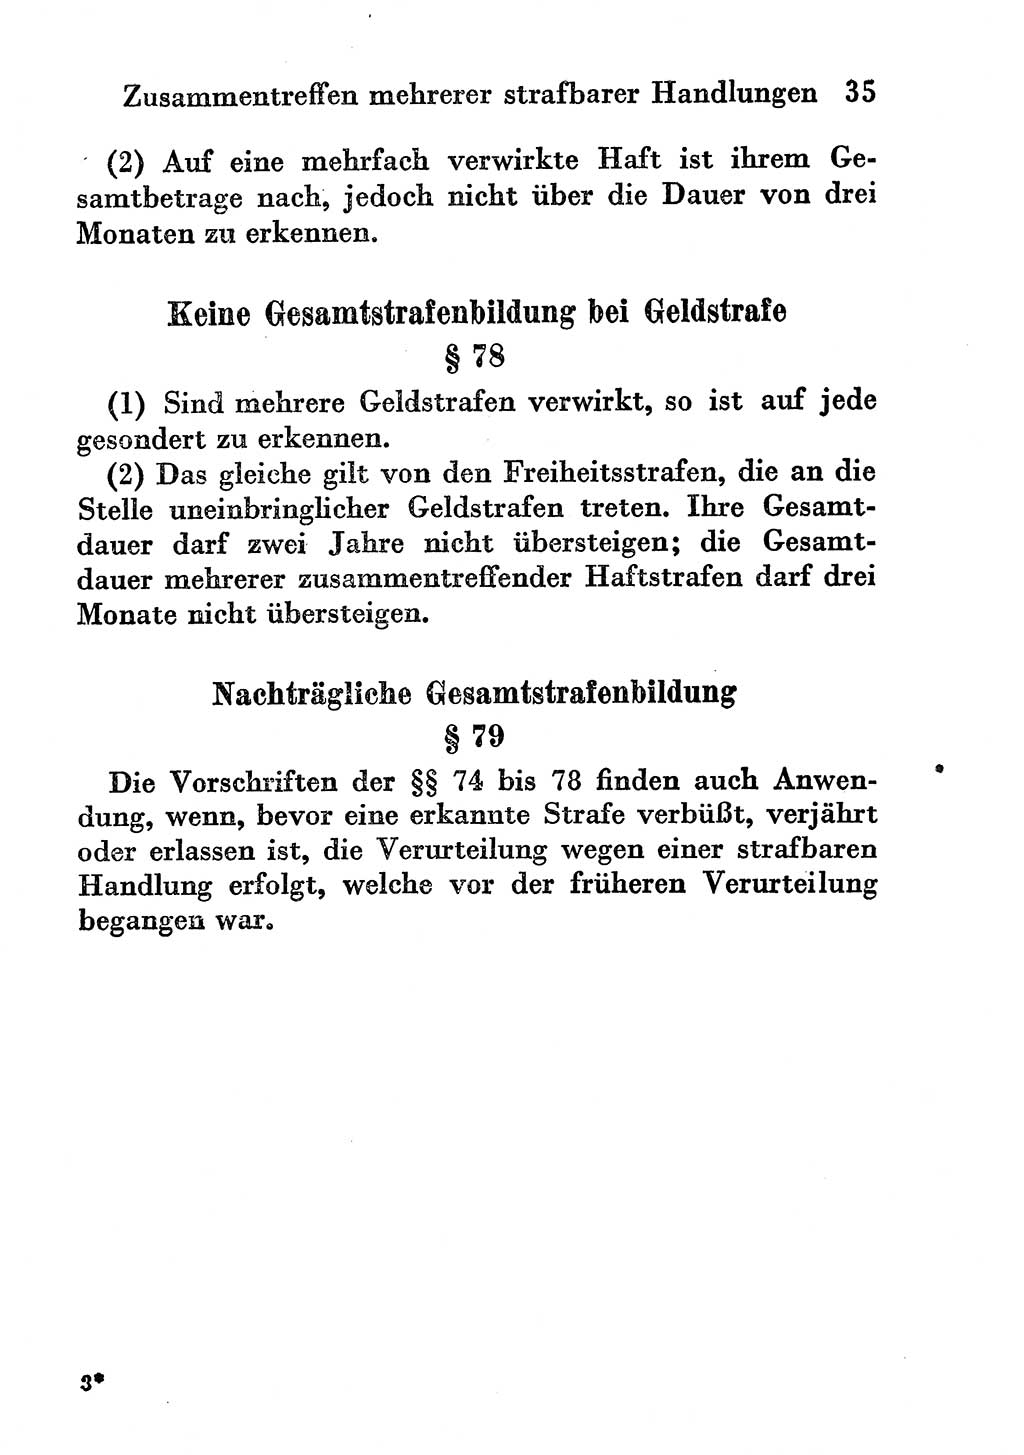 Strafgesetzbuch (StGB) und andere Strafgesetze [Deutsche Demokratische Republik (DDR)] 1956, Seite 35 (StGB Strafges. DDR 1956, S. 35)